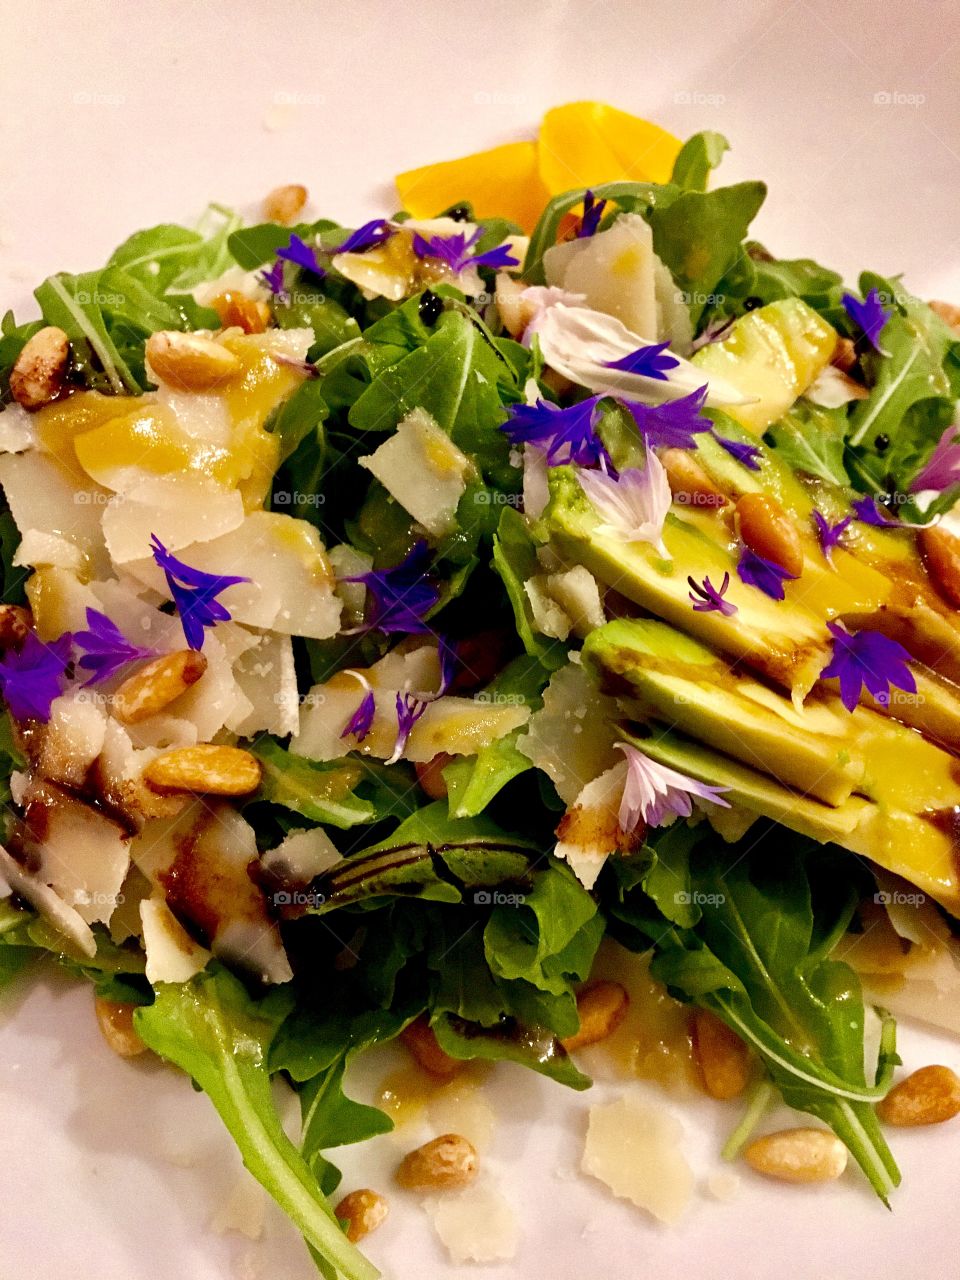 Arugula Salad 